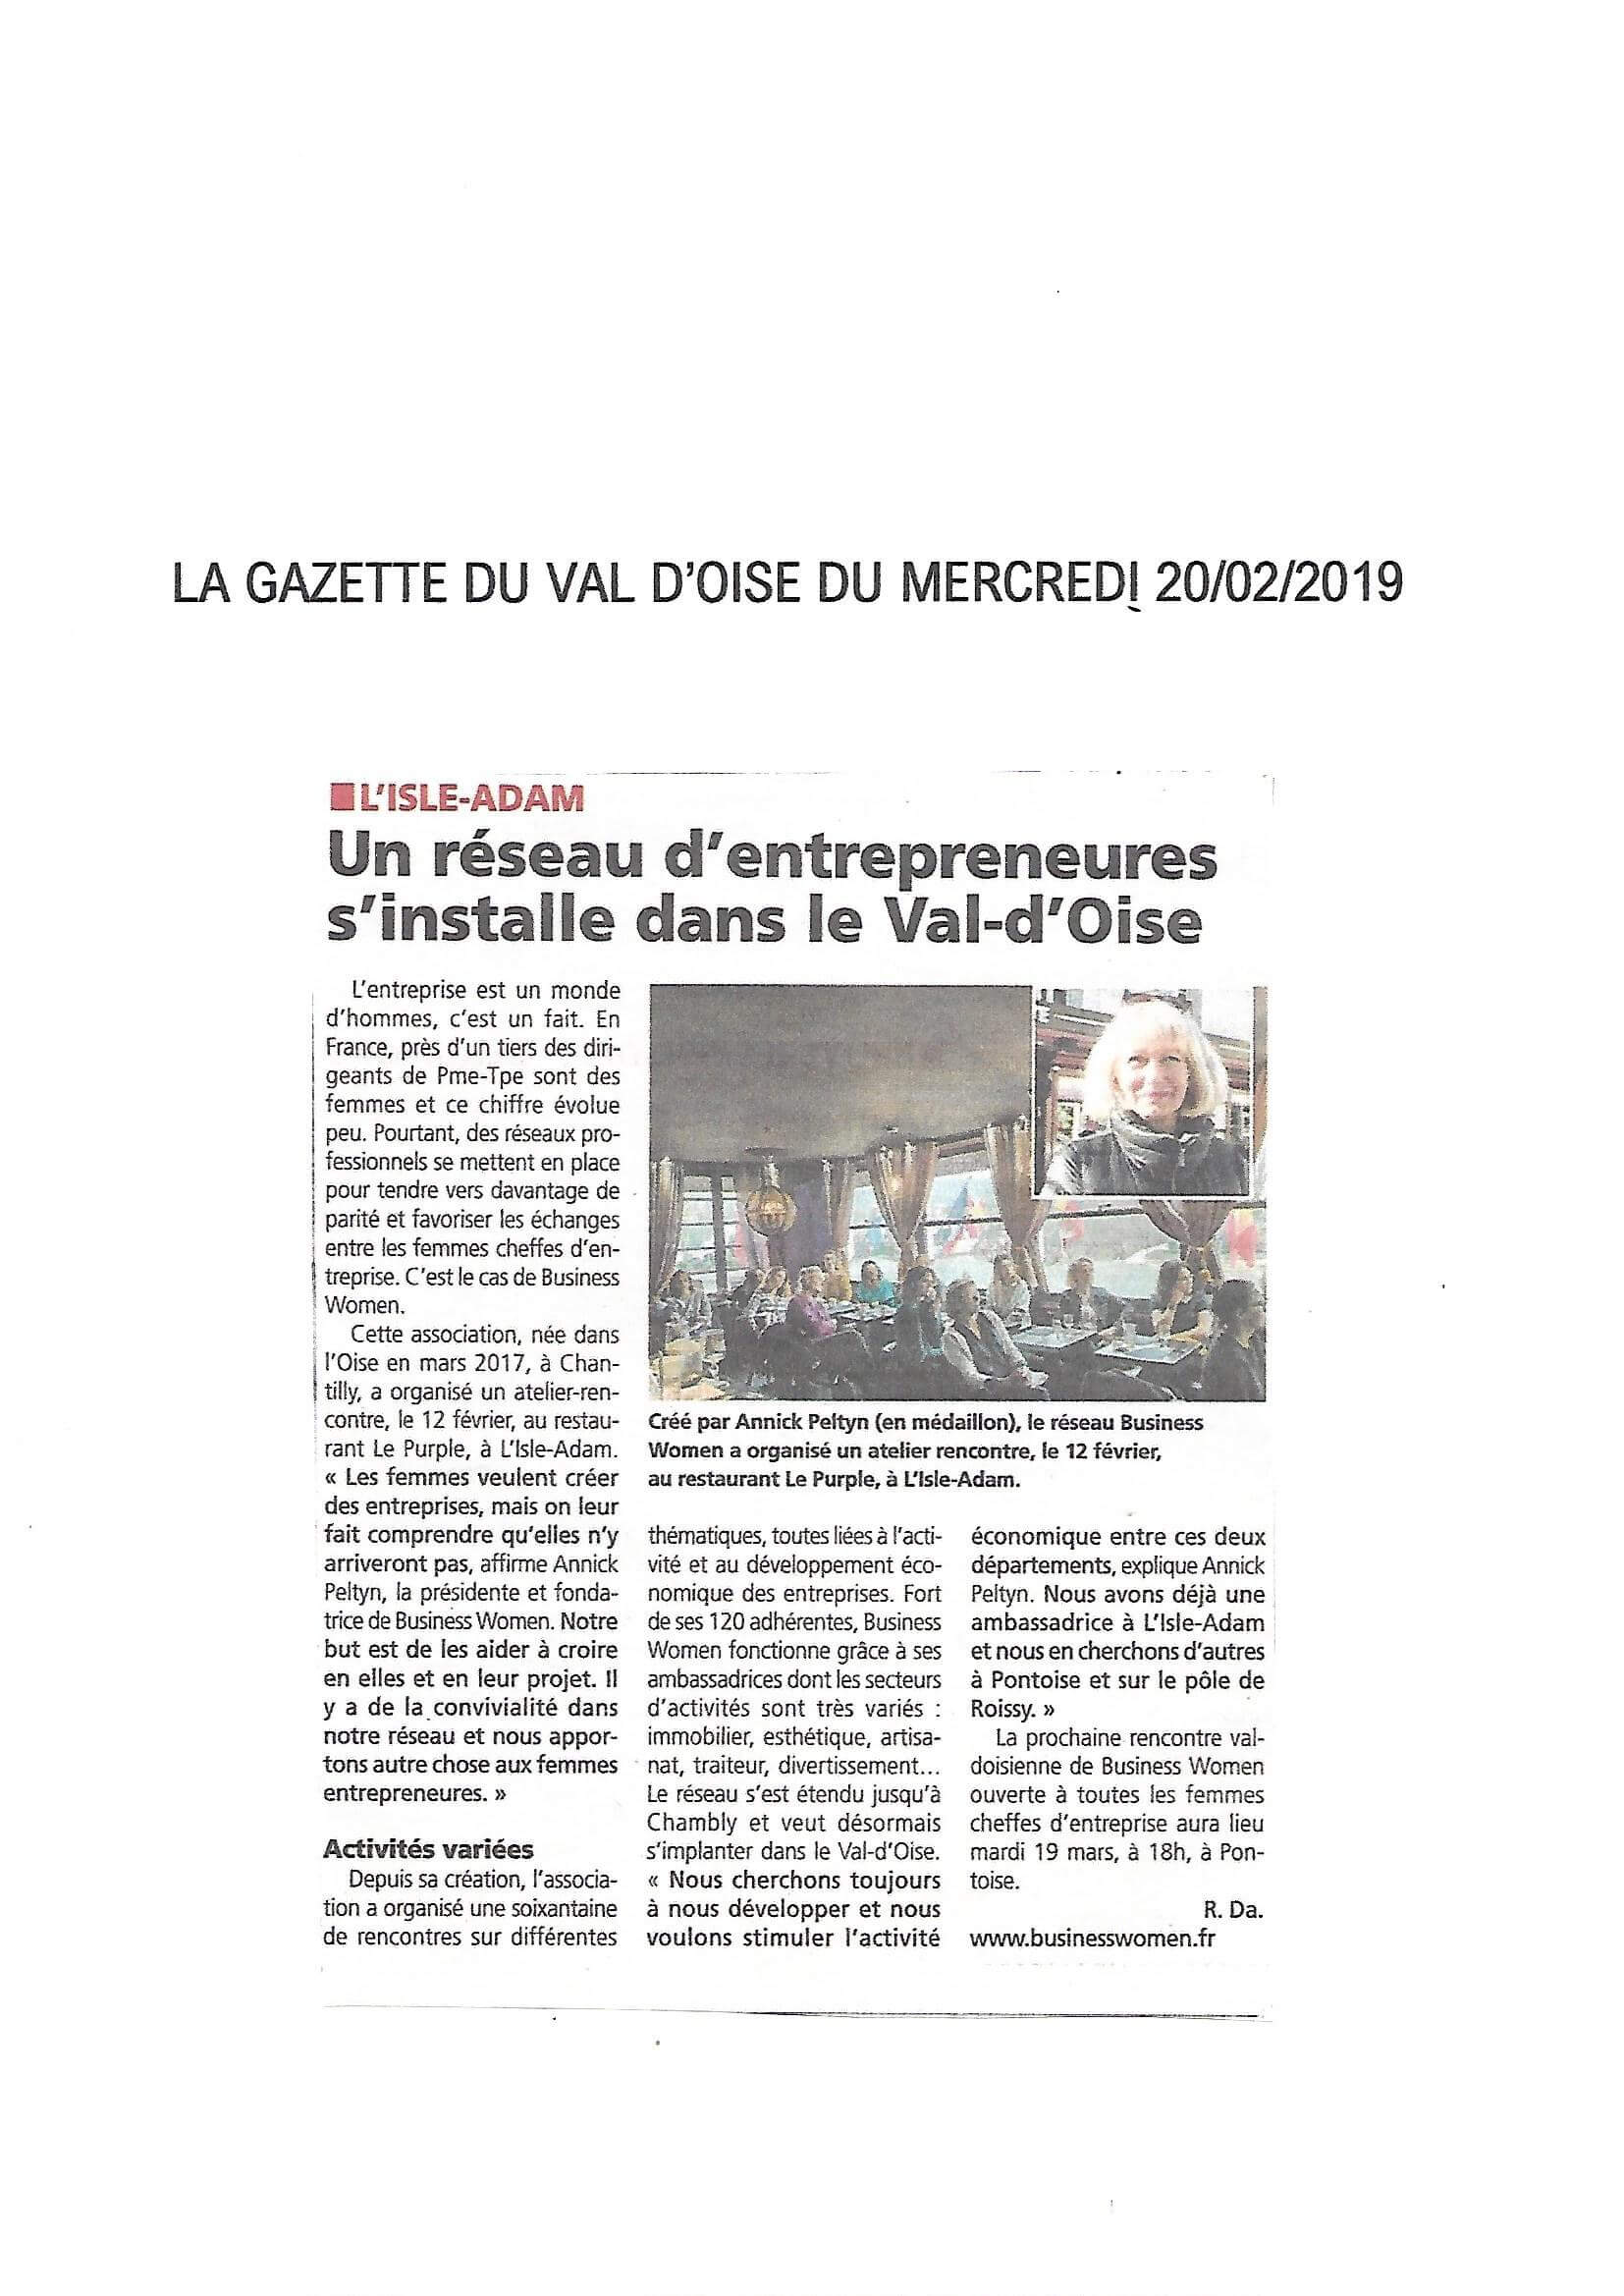 Réseau d'entrepreneures dans le Val d'Oise